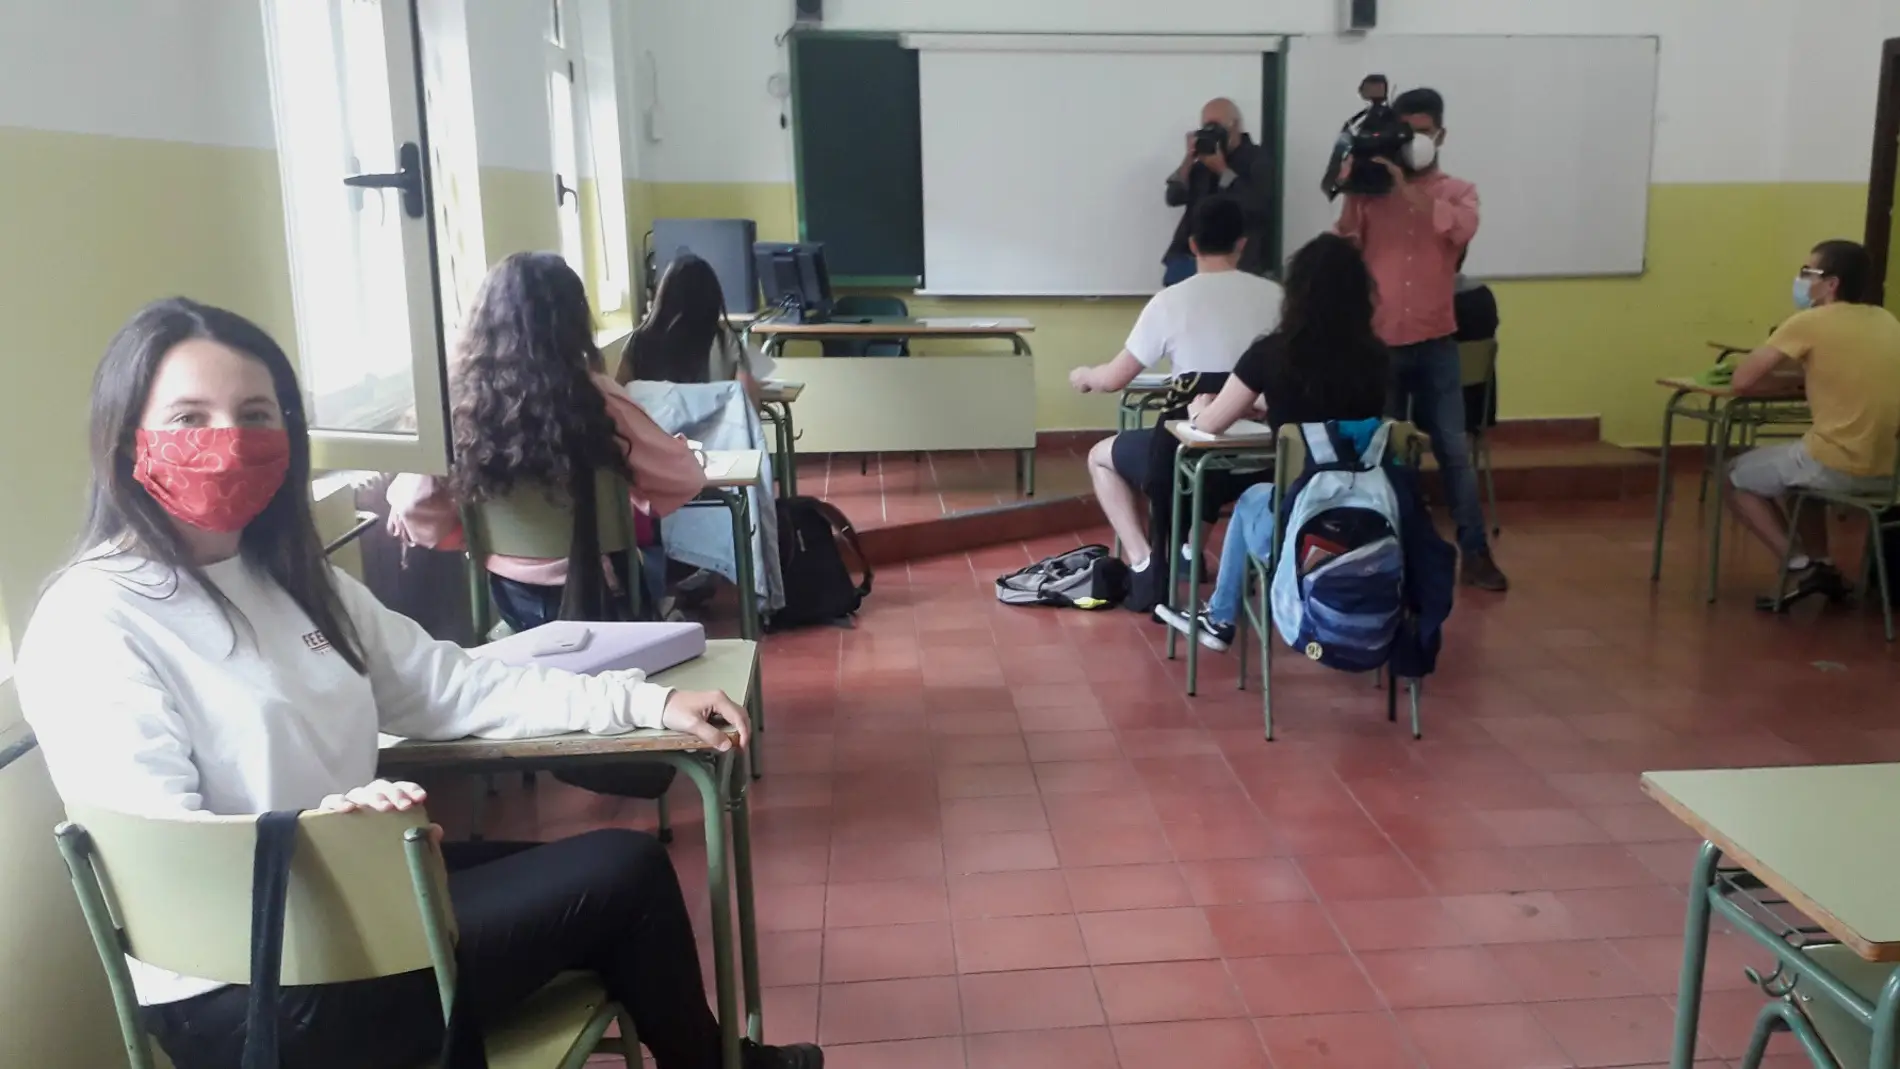 Los alumnos asturianos vuelven voluntariamente a las aulas